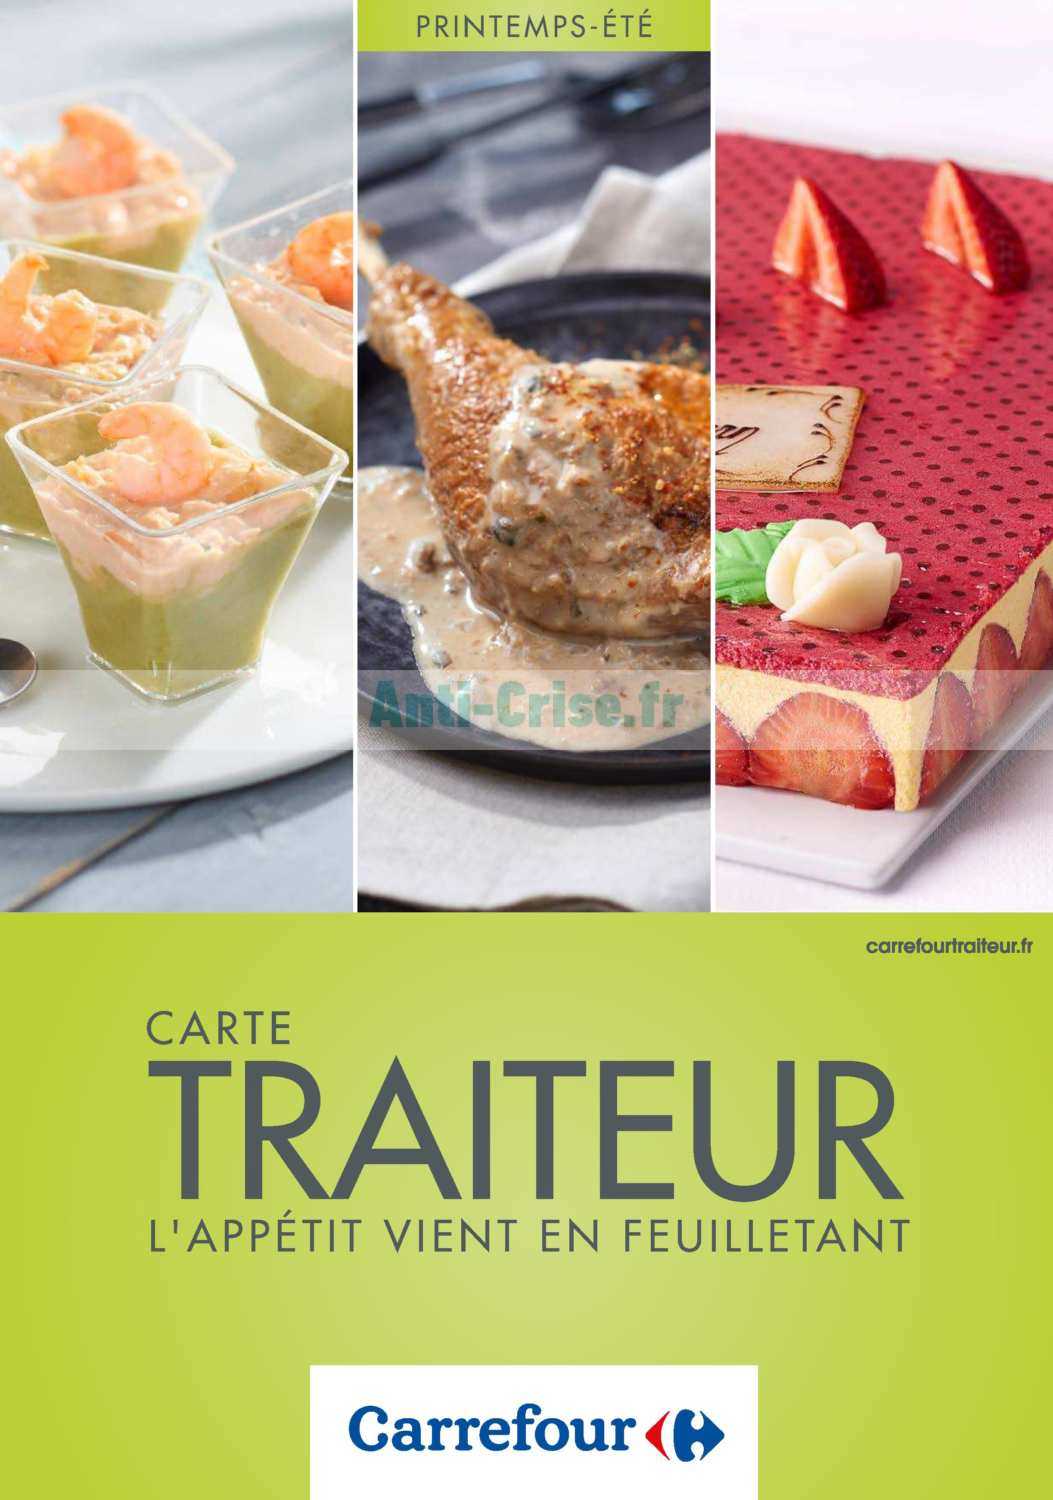 Anti-crise.fr | Catalogue Carrefour du 20 mars au 16 septembre 2019